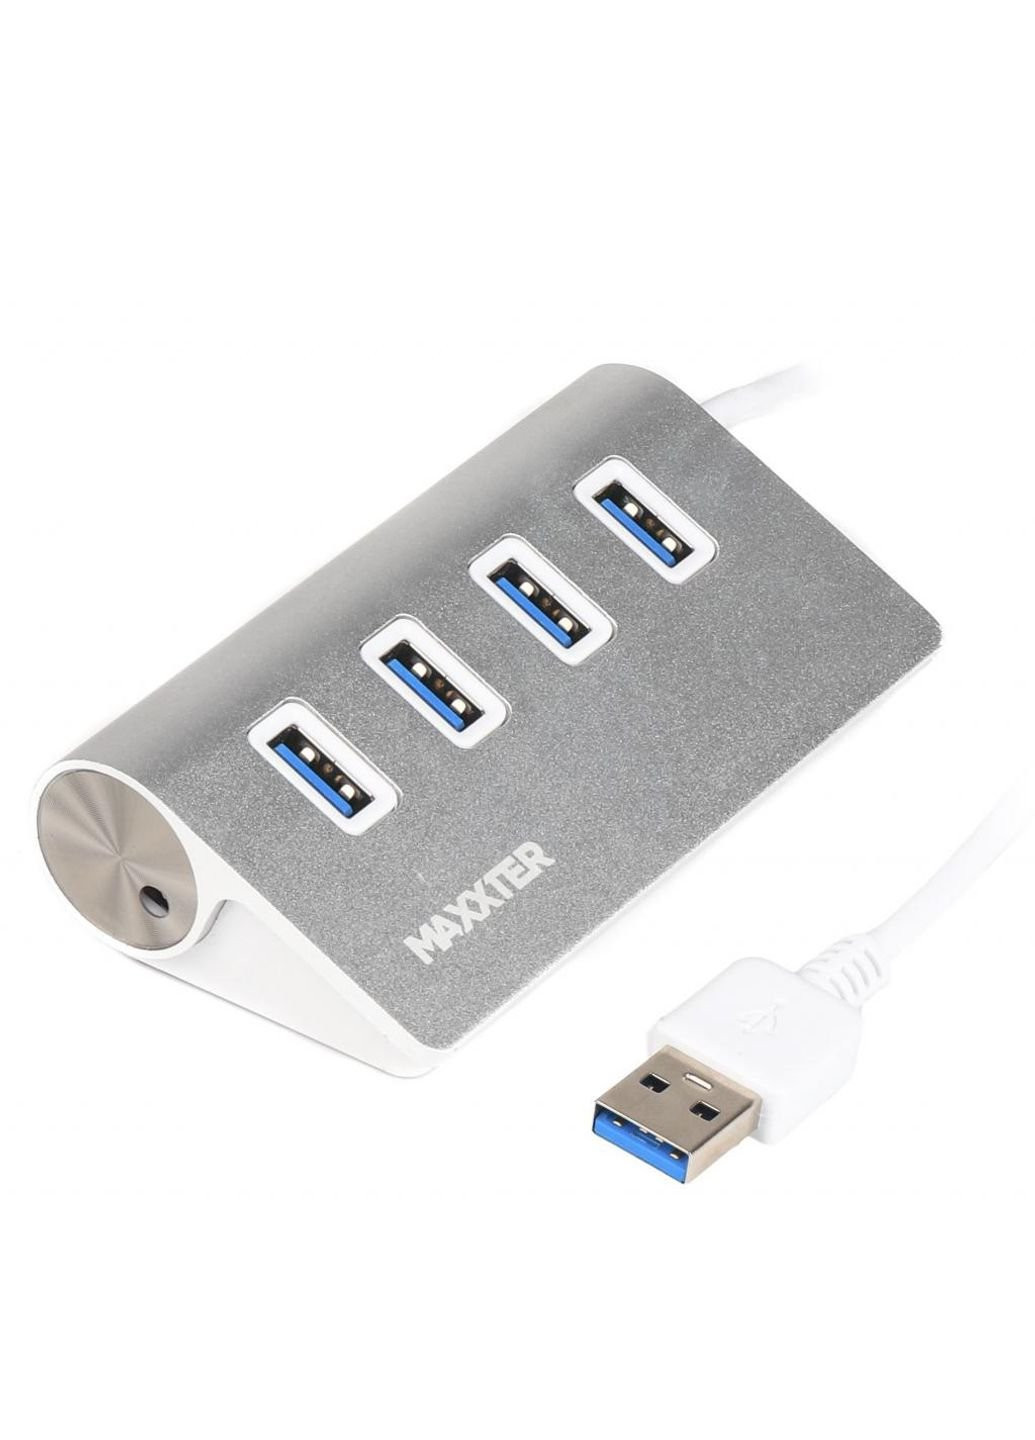 Концентратор USB 3.0 Type-A 4 ports silver (HU3A-4P-01) Maxxter (250125029)